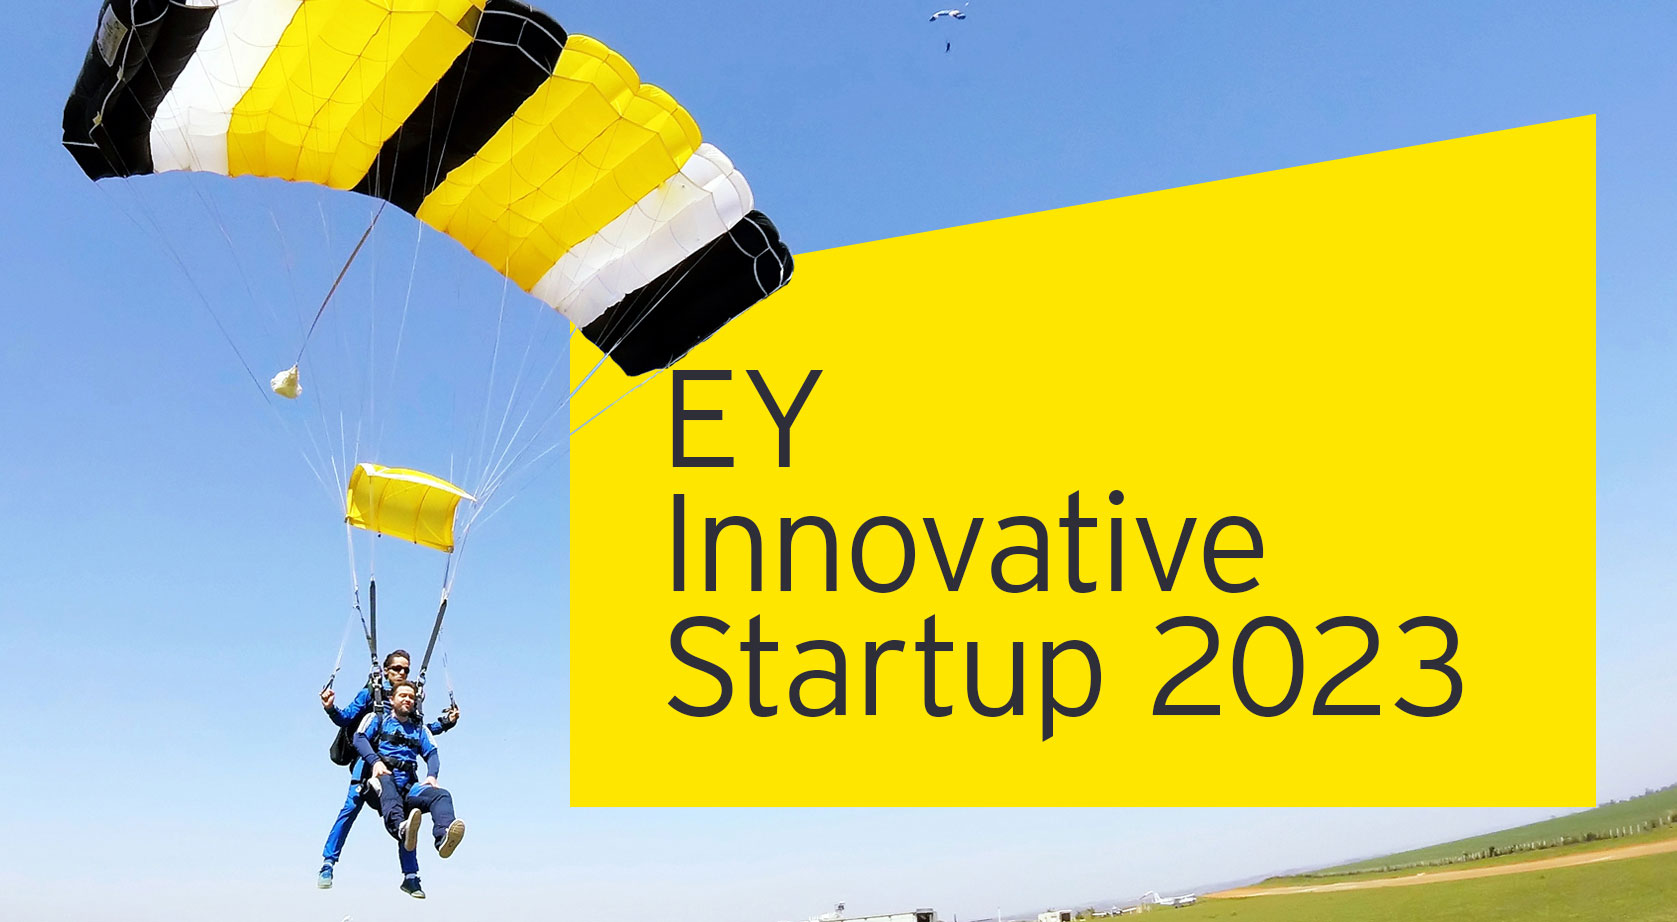 EY Innovative Startup 2023